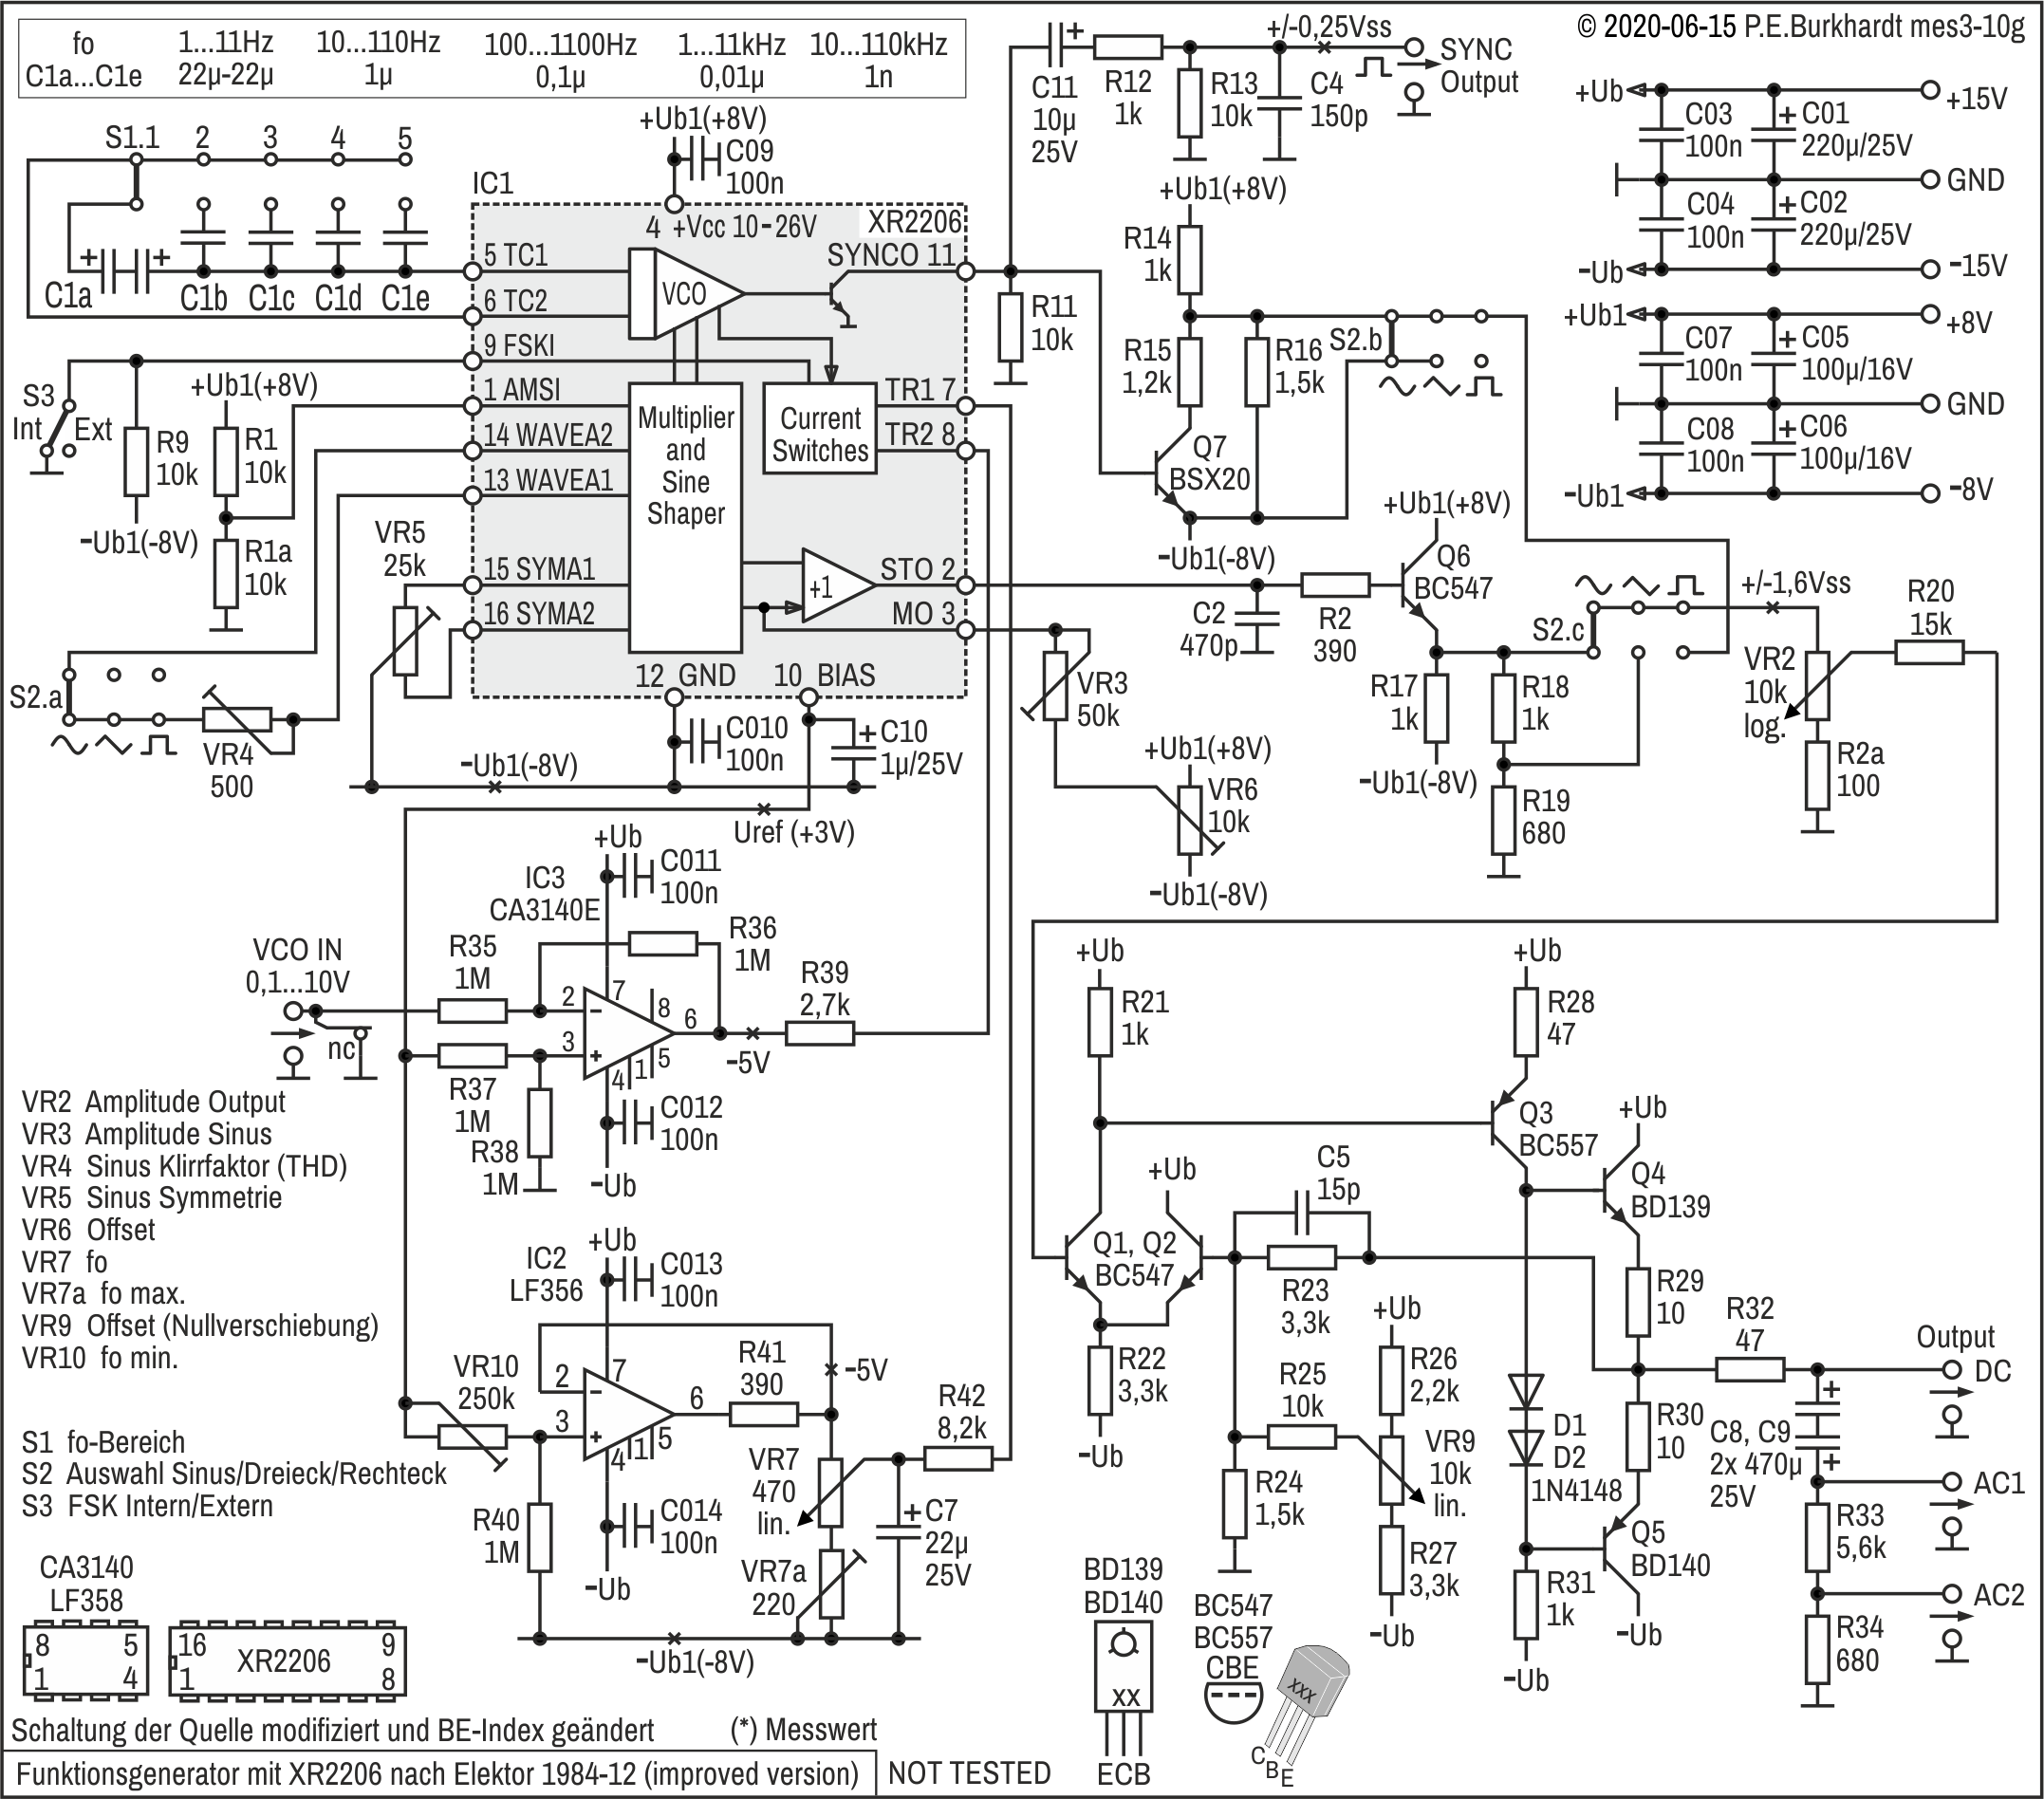 Funktionsgenerator XR2206 nach Elektor 1984-12